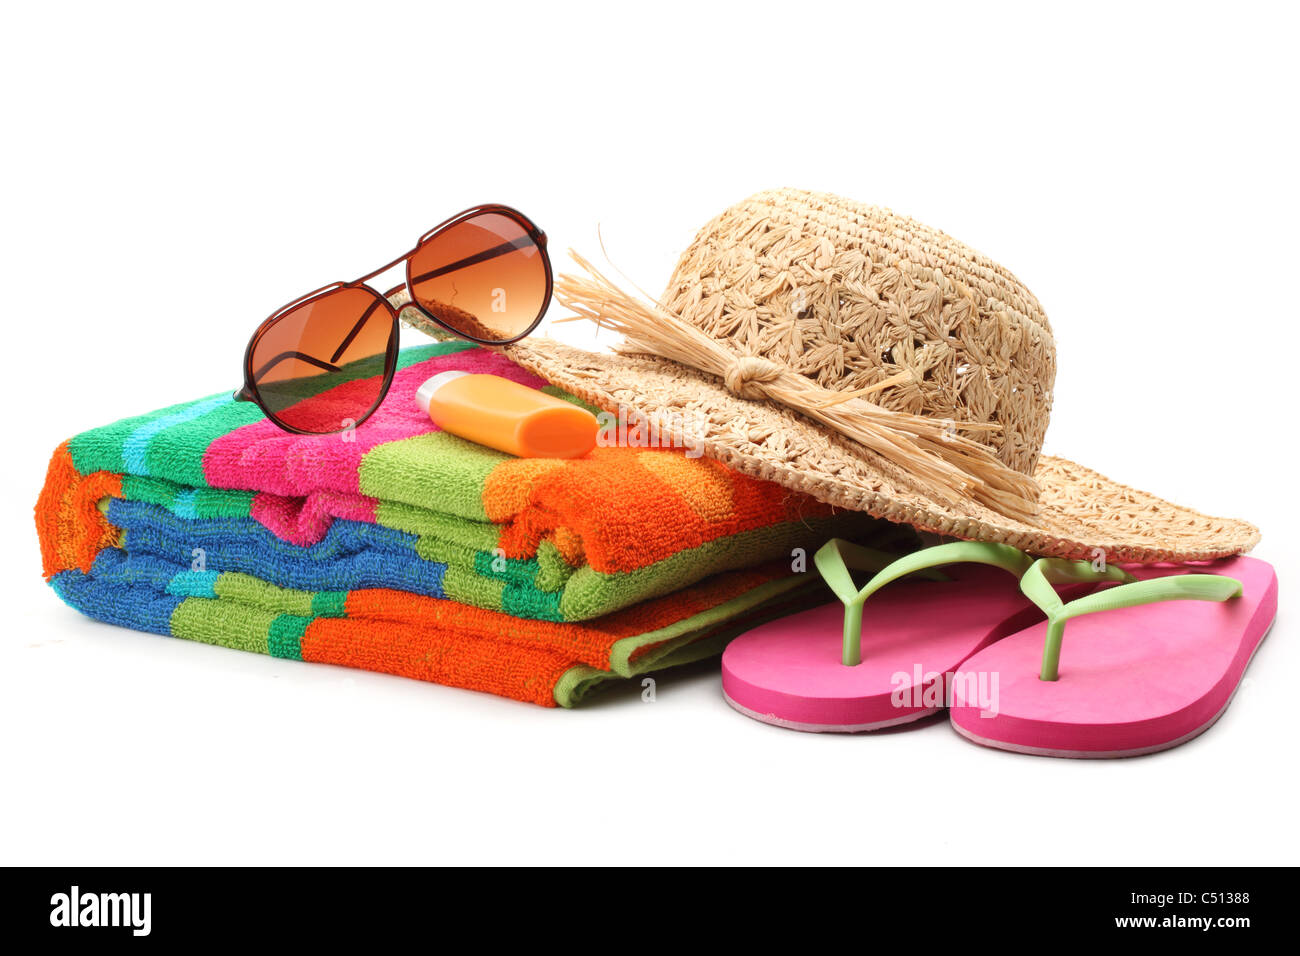 Elementi di spiaggia con cappello di paglia,asciugamano,infradito e occhiali da sole.isolati su sfondo bianco. Foto Stock